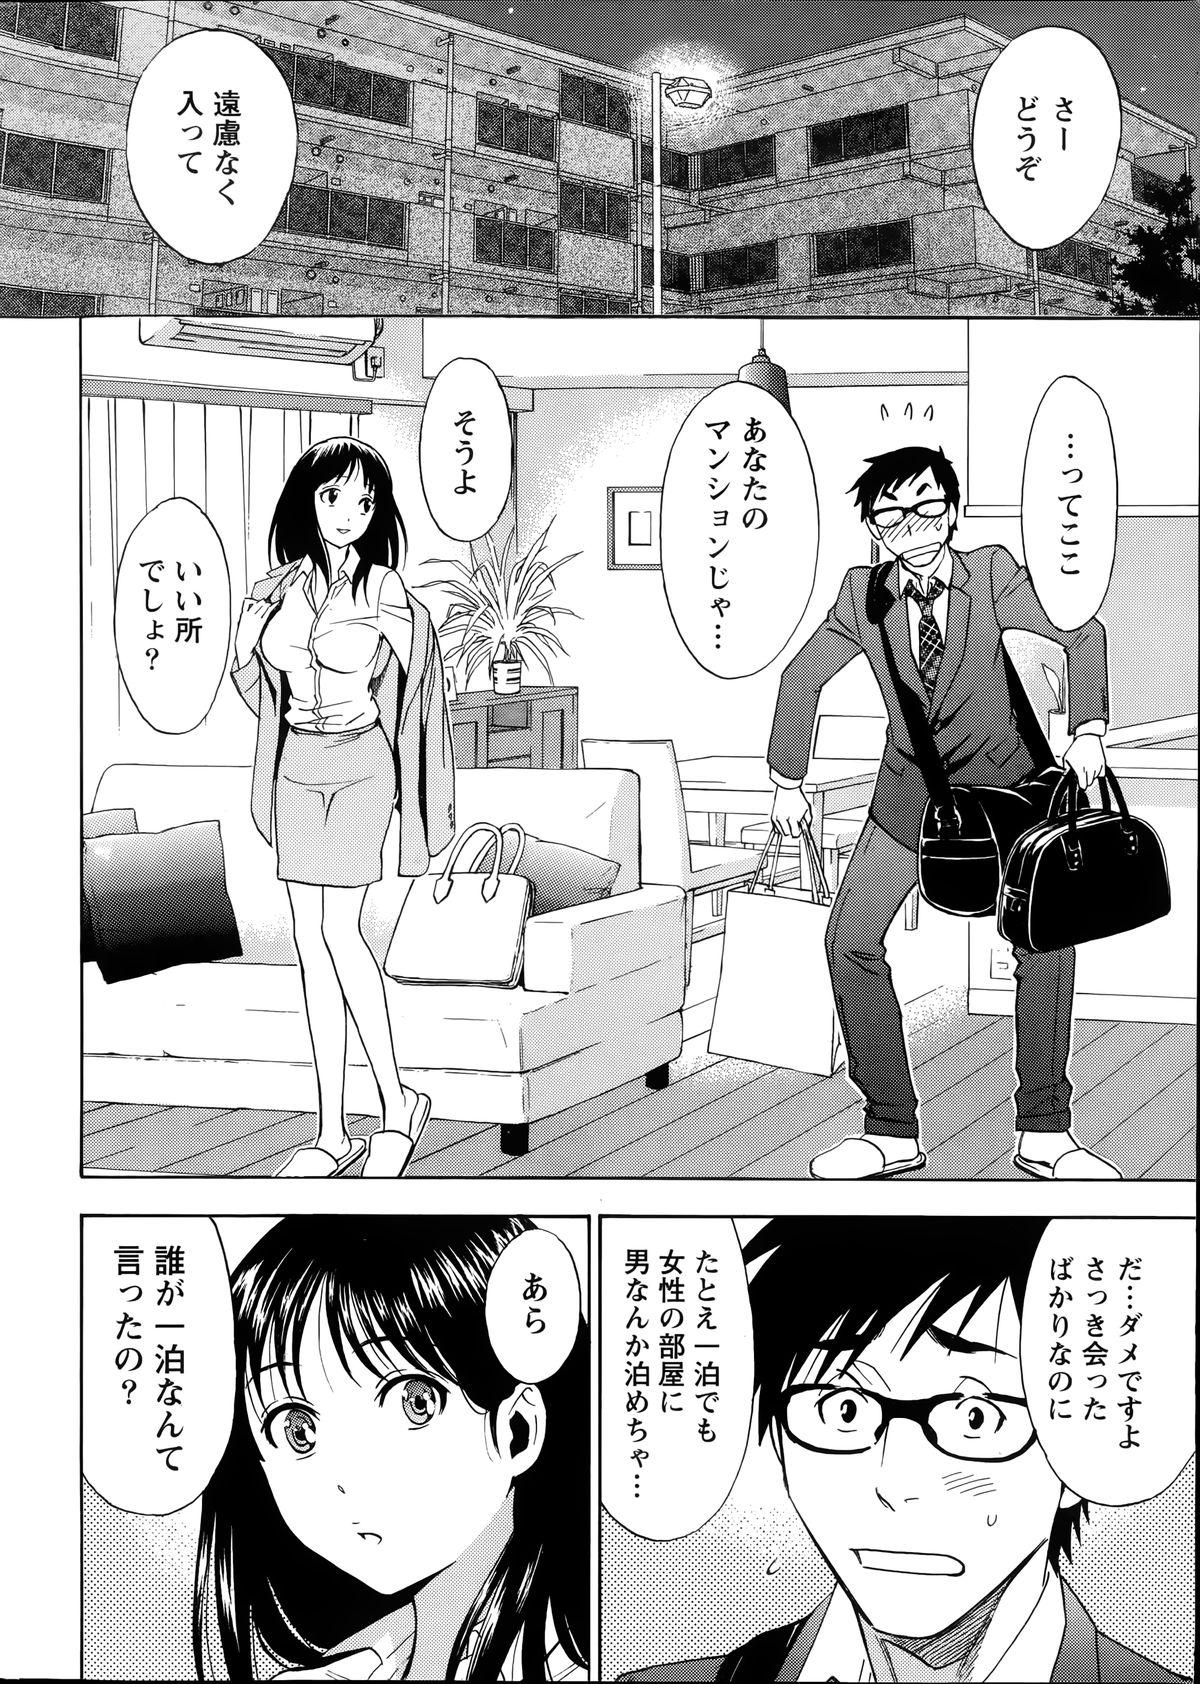 [Sawada Furope] Nise kon! - Spectacular Happy Sham Marriage! Ch.1-5 11